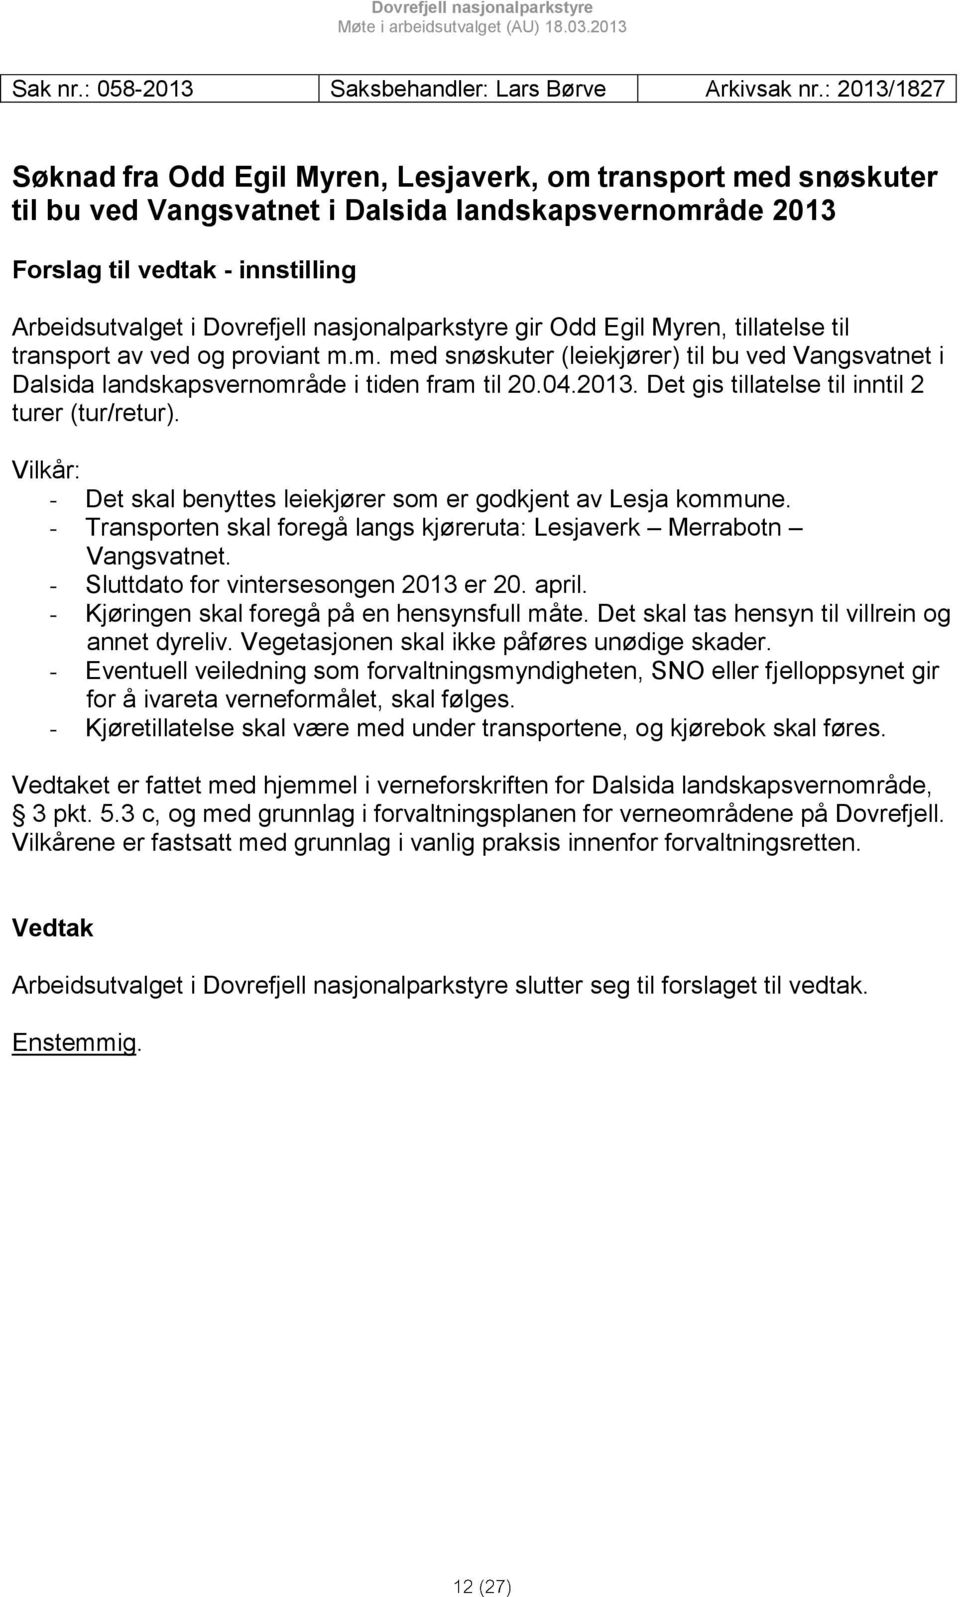 nasjonalparkstyre gir Odd Egil Myren, tillatelse til transport av ved og proviant m.m. med snøskuter (leiekjører) til bu ved Vangsvatnet i Dalsida landskapsvernområde i tiden fram til 20.04.2013.